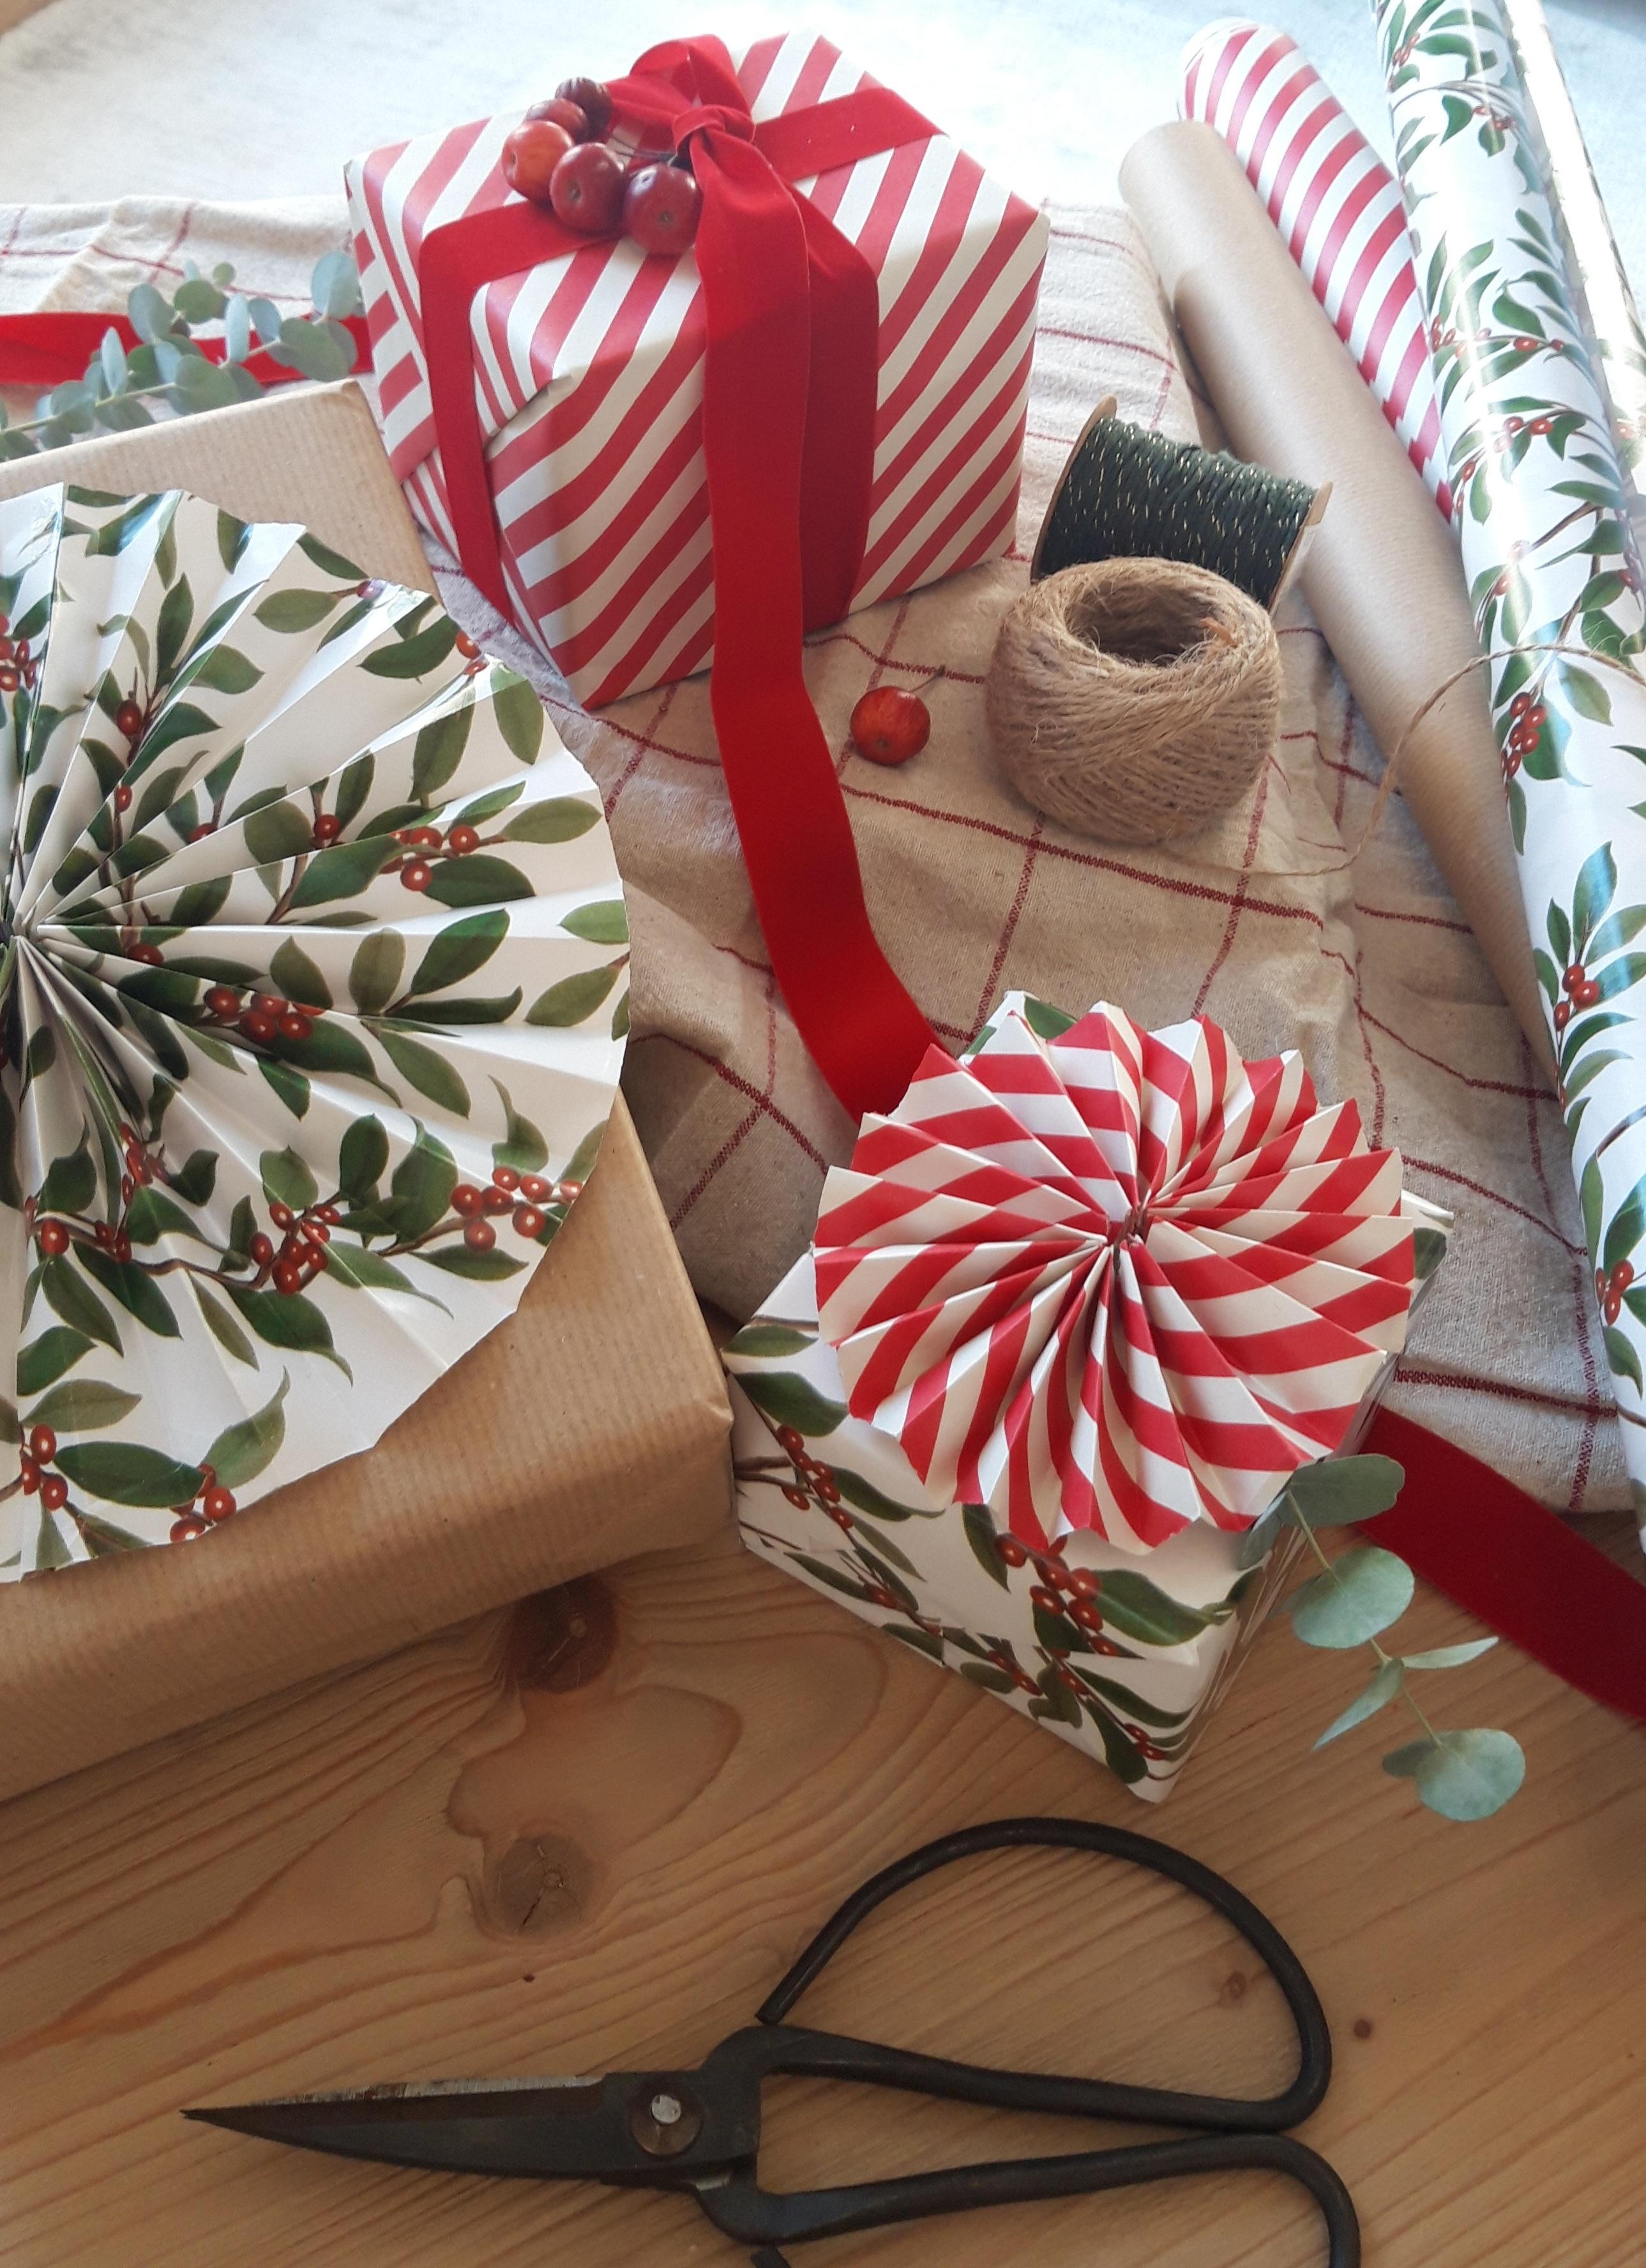 Bald ist es wieder Zeit für #weihnachtsgeschenke 🎄🎅💝
#geschenkverpackung #geschenke #presents